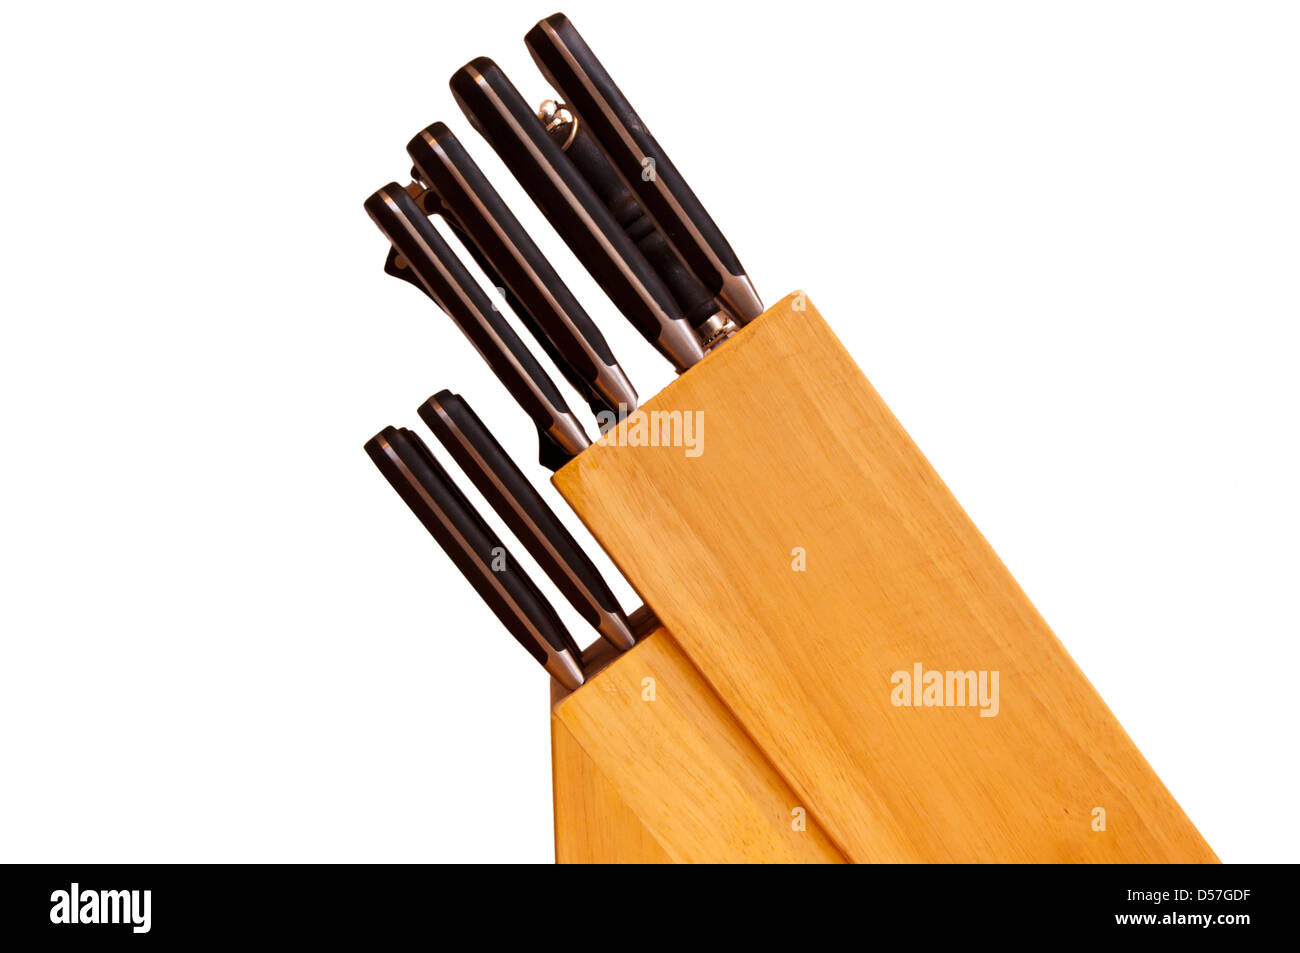 Cuchillo de cocina de madera con bloque de cuchillas Foto de stock